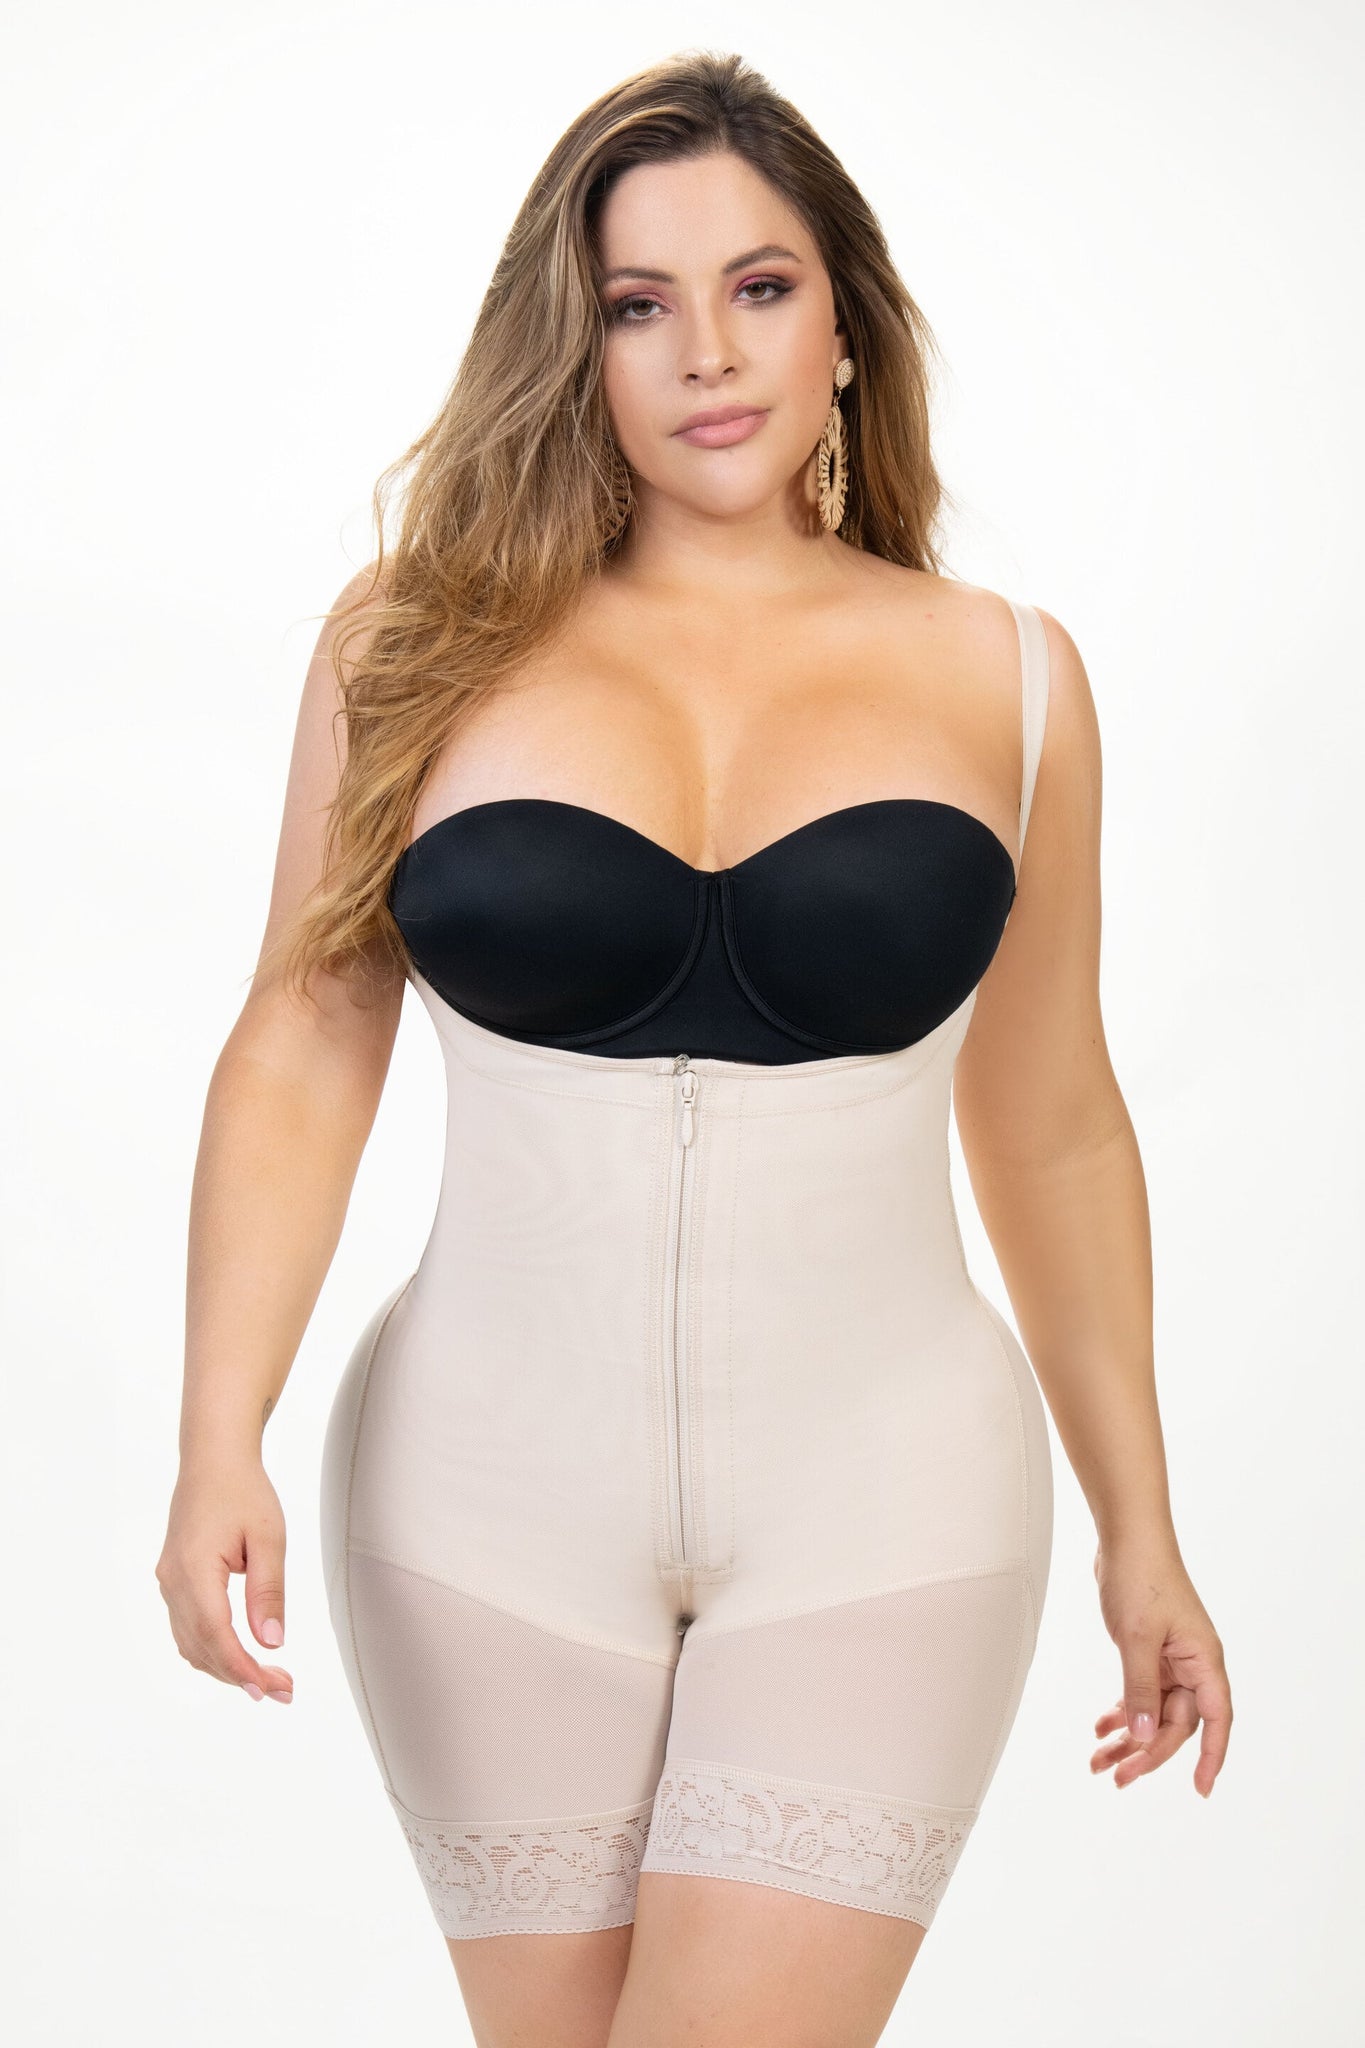  FeelinGirl Body Shaper For Women Tummy Control Shapewear  Side Zipper Open Bust Fajas For Ladies Daily Life